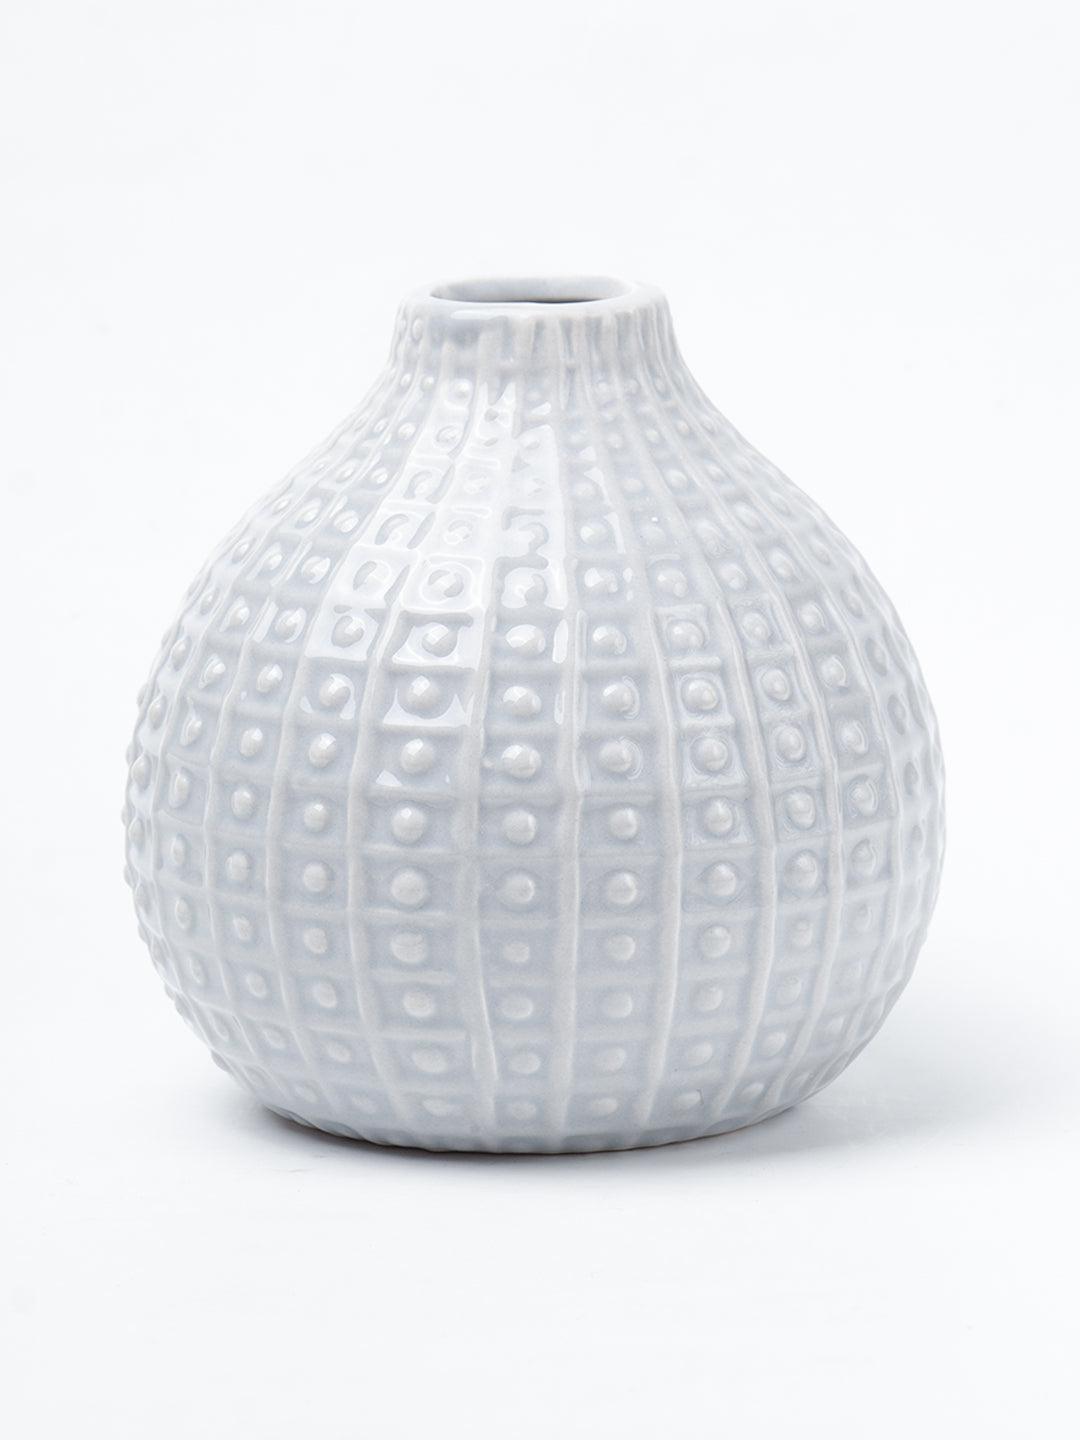 Grey Ceramic Vase - Textured Pattern, Flower Holder - 2